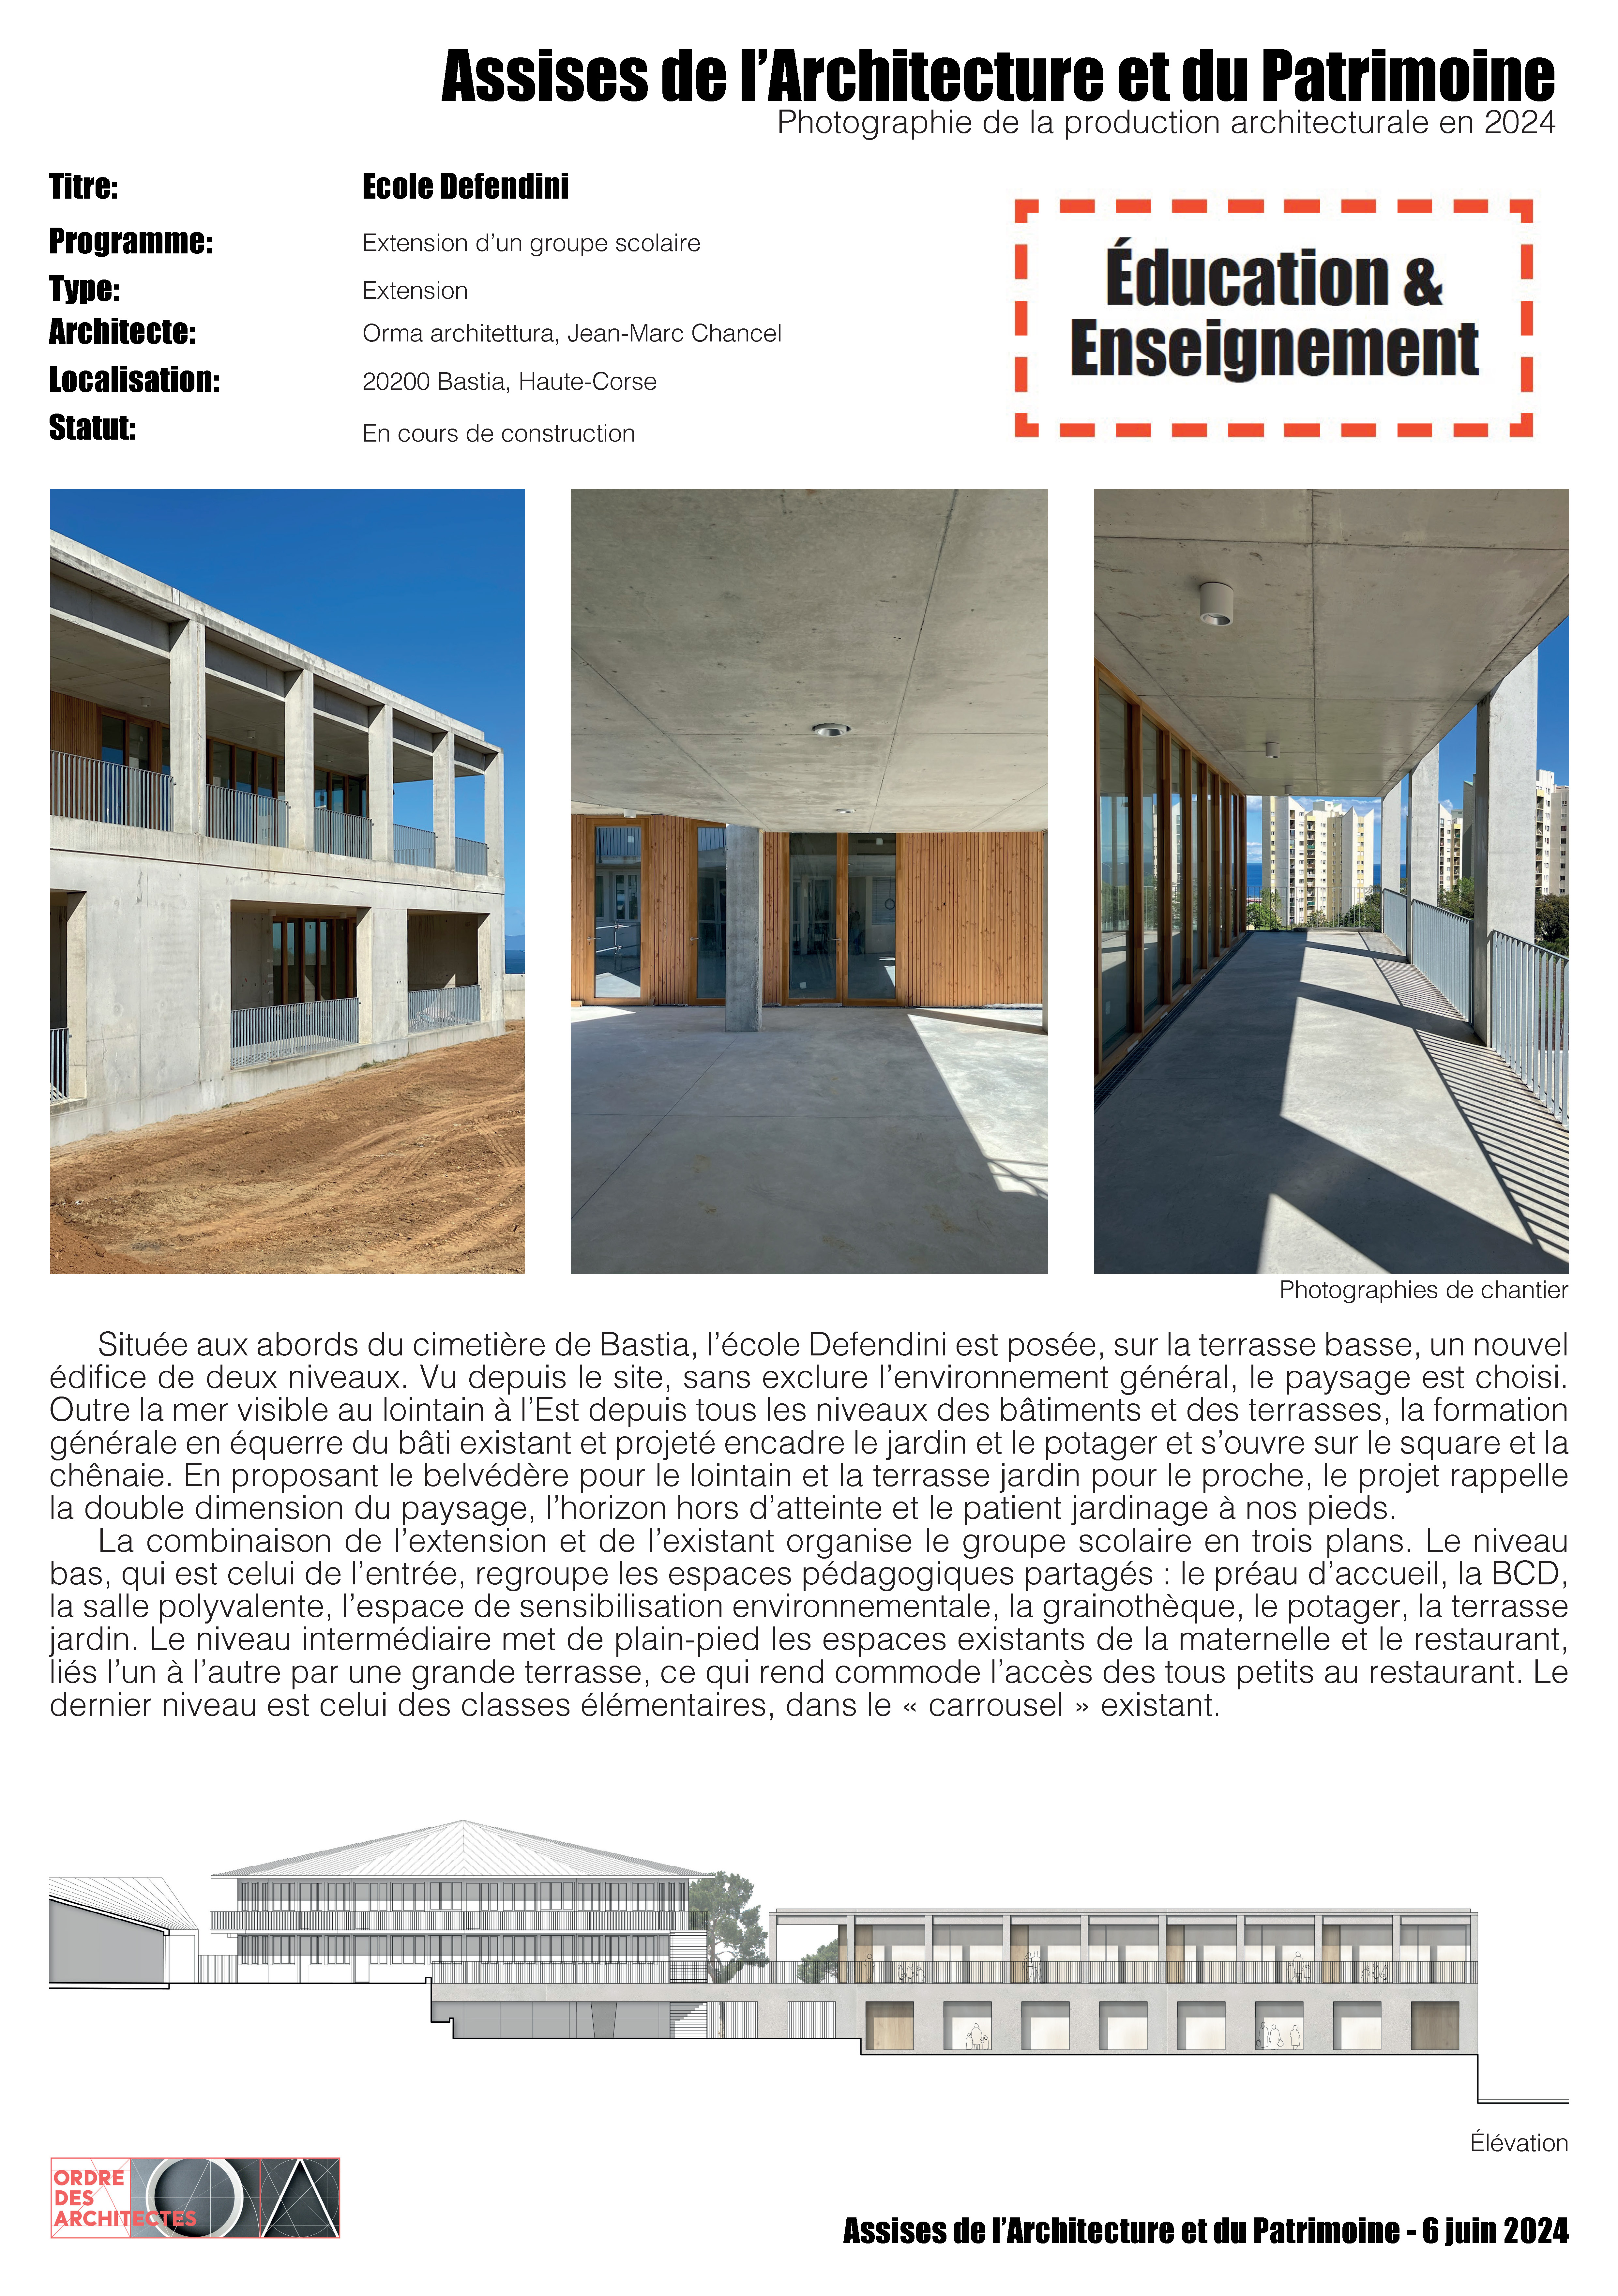 Ecole Defendini - Orma architettura, Jean-Marc Chancel - Bastia